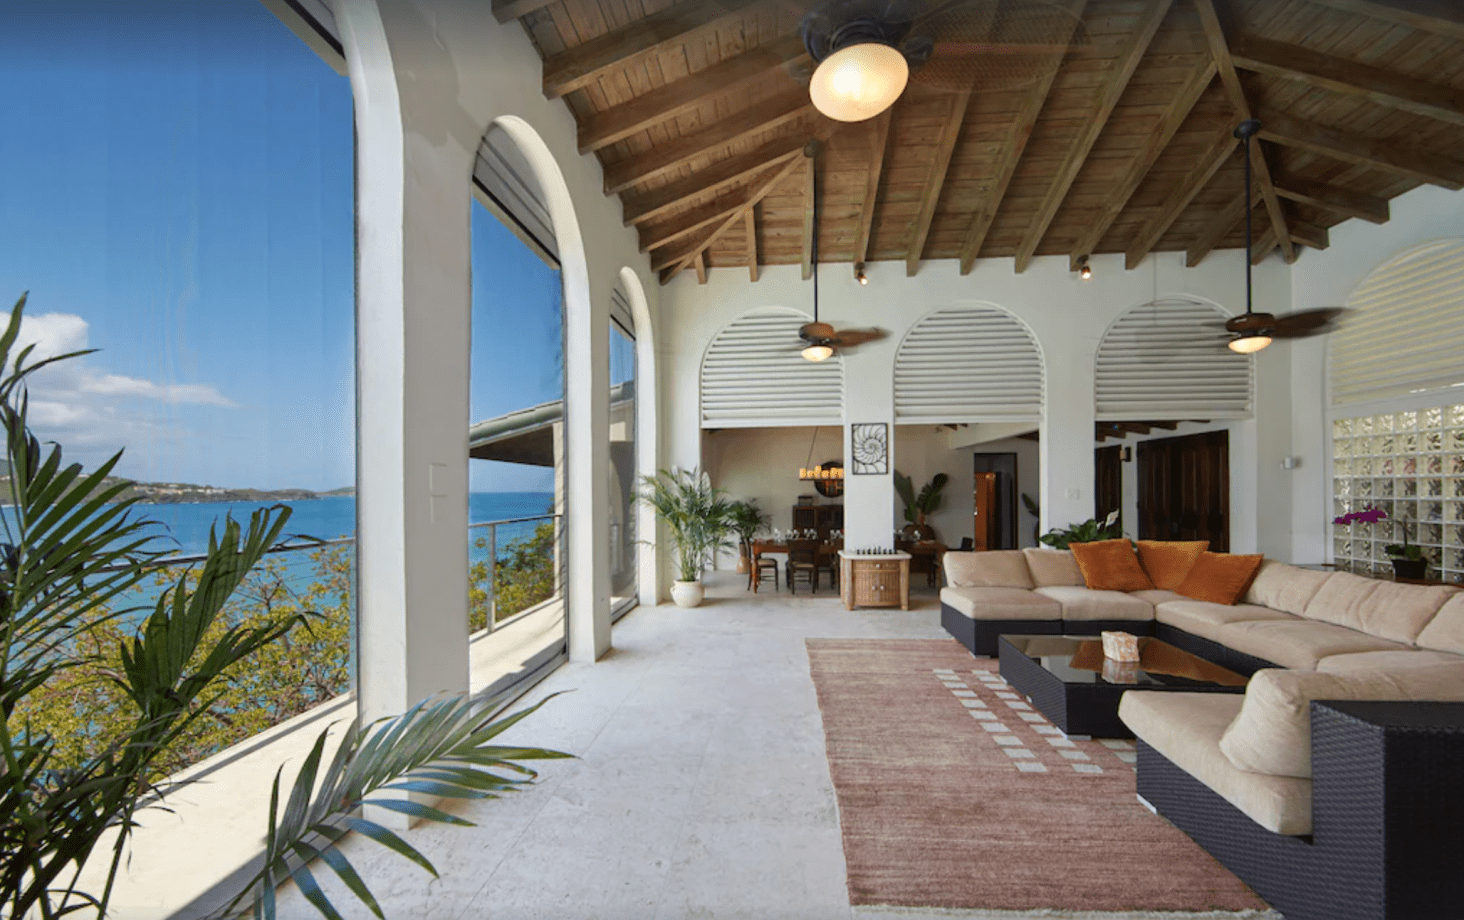 Villa Ohana Vrbo Rental At Magen’s Bay in St. Thomas